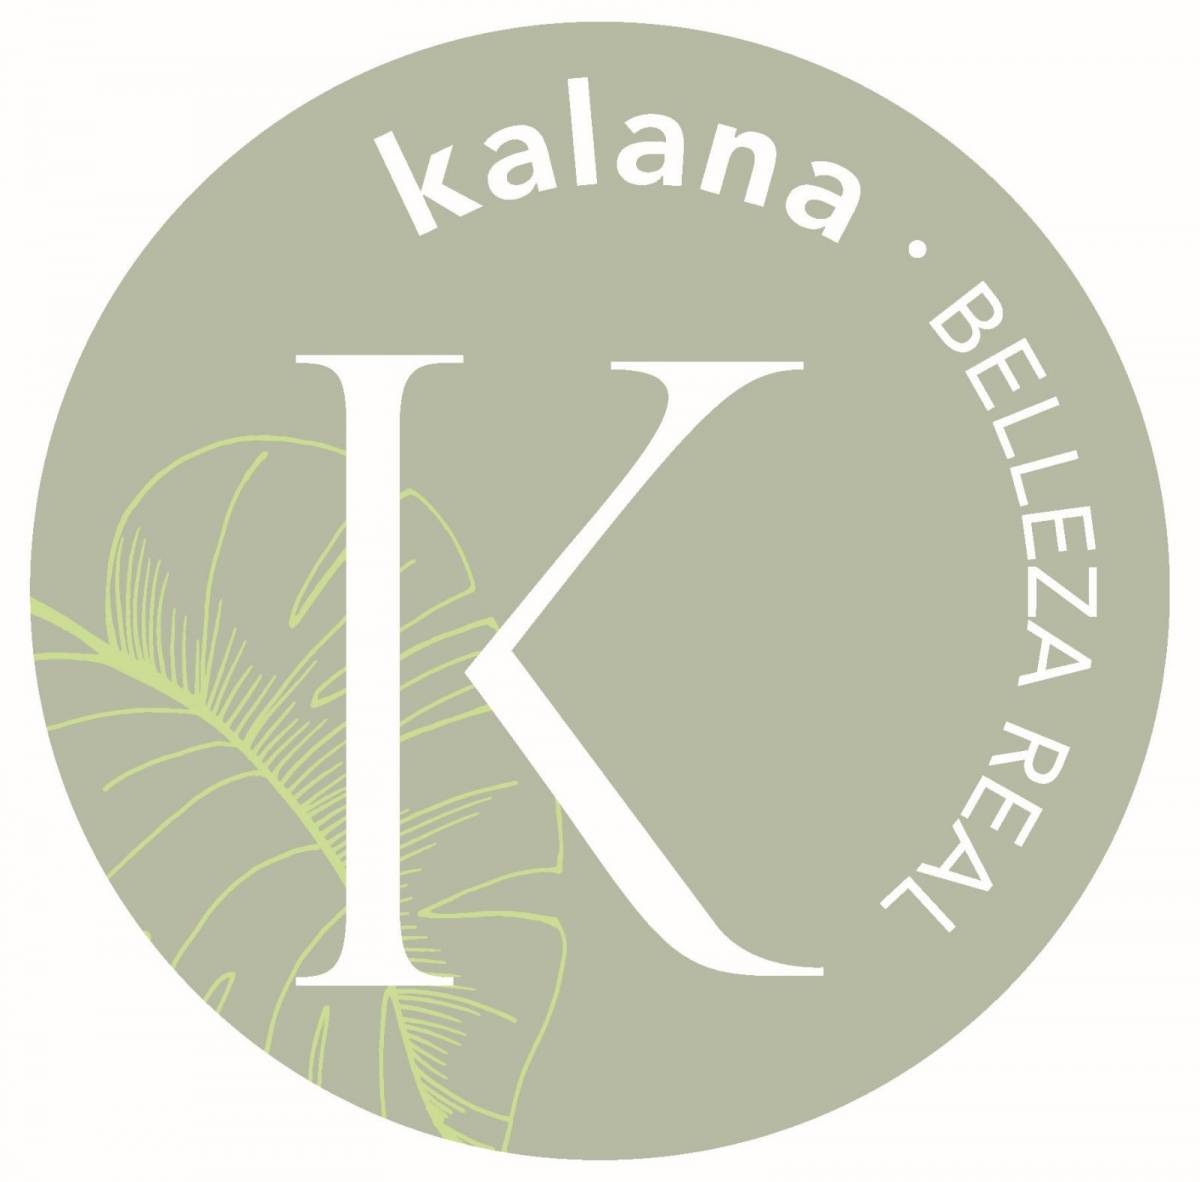 Kalana by Dámaris - Sevilla la Nueva - Peluquería para eventos